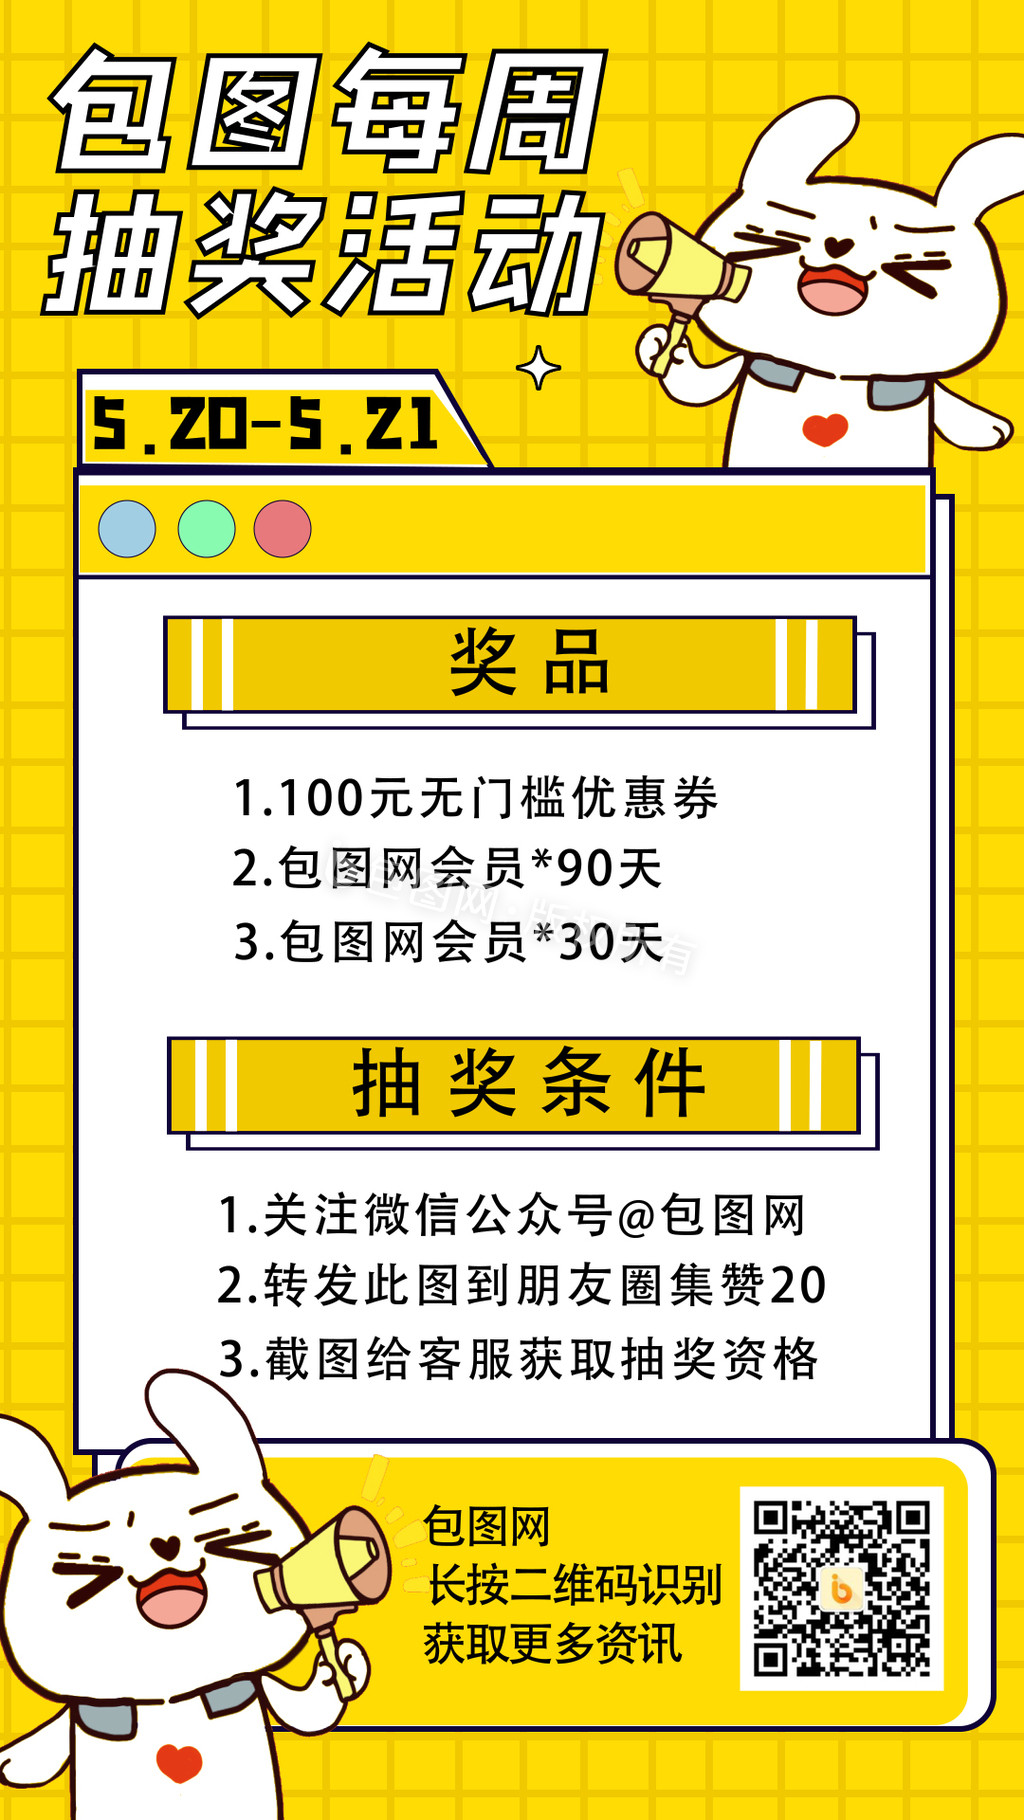 黄色抽奖活动促销微信二维码动态海报GIF图片